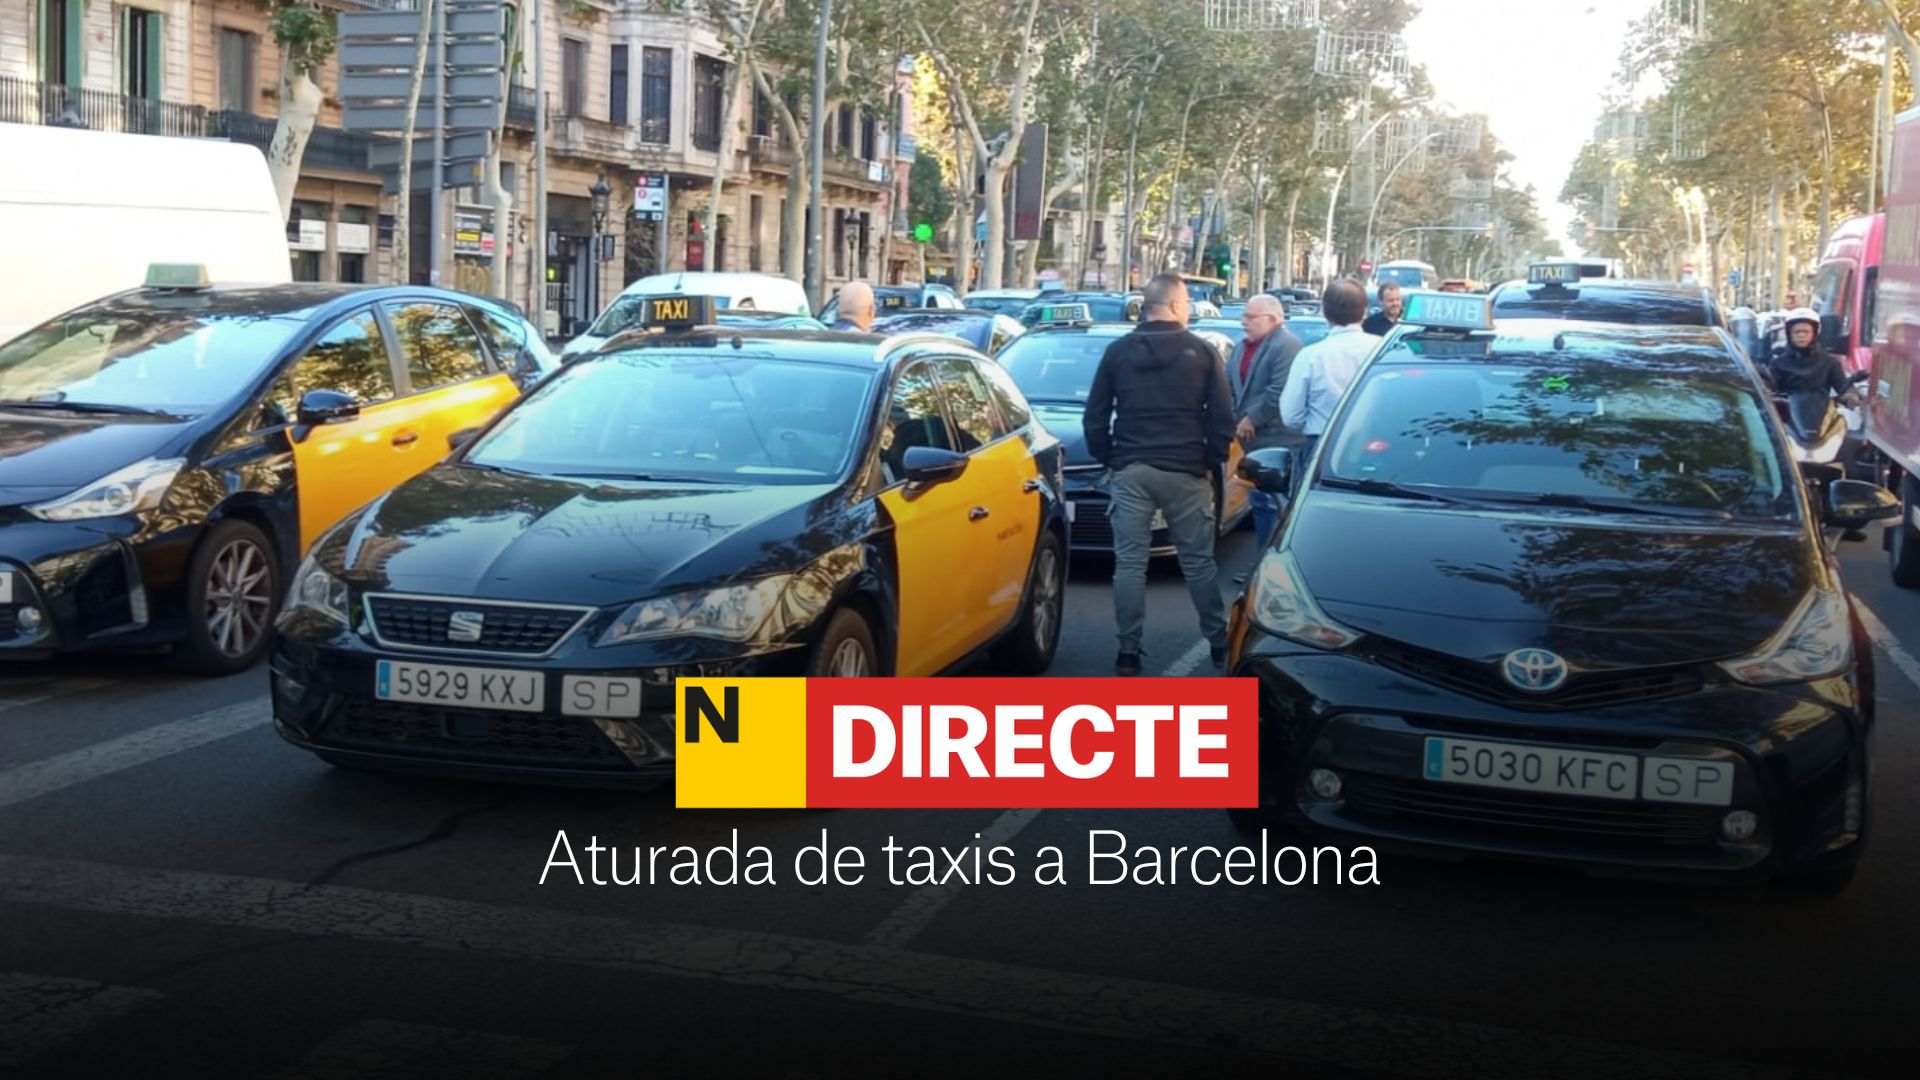 Aturada de taxis a Barcelona, DIRECTE | Carrers tallats i última hora